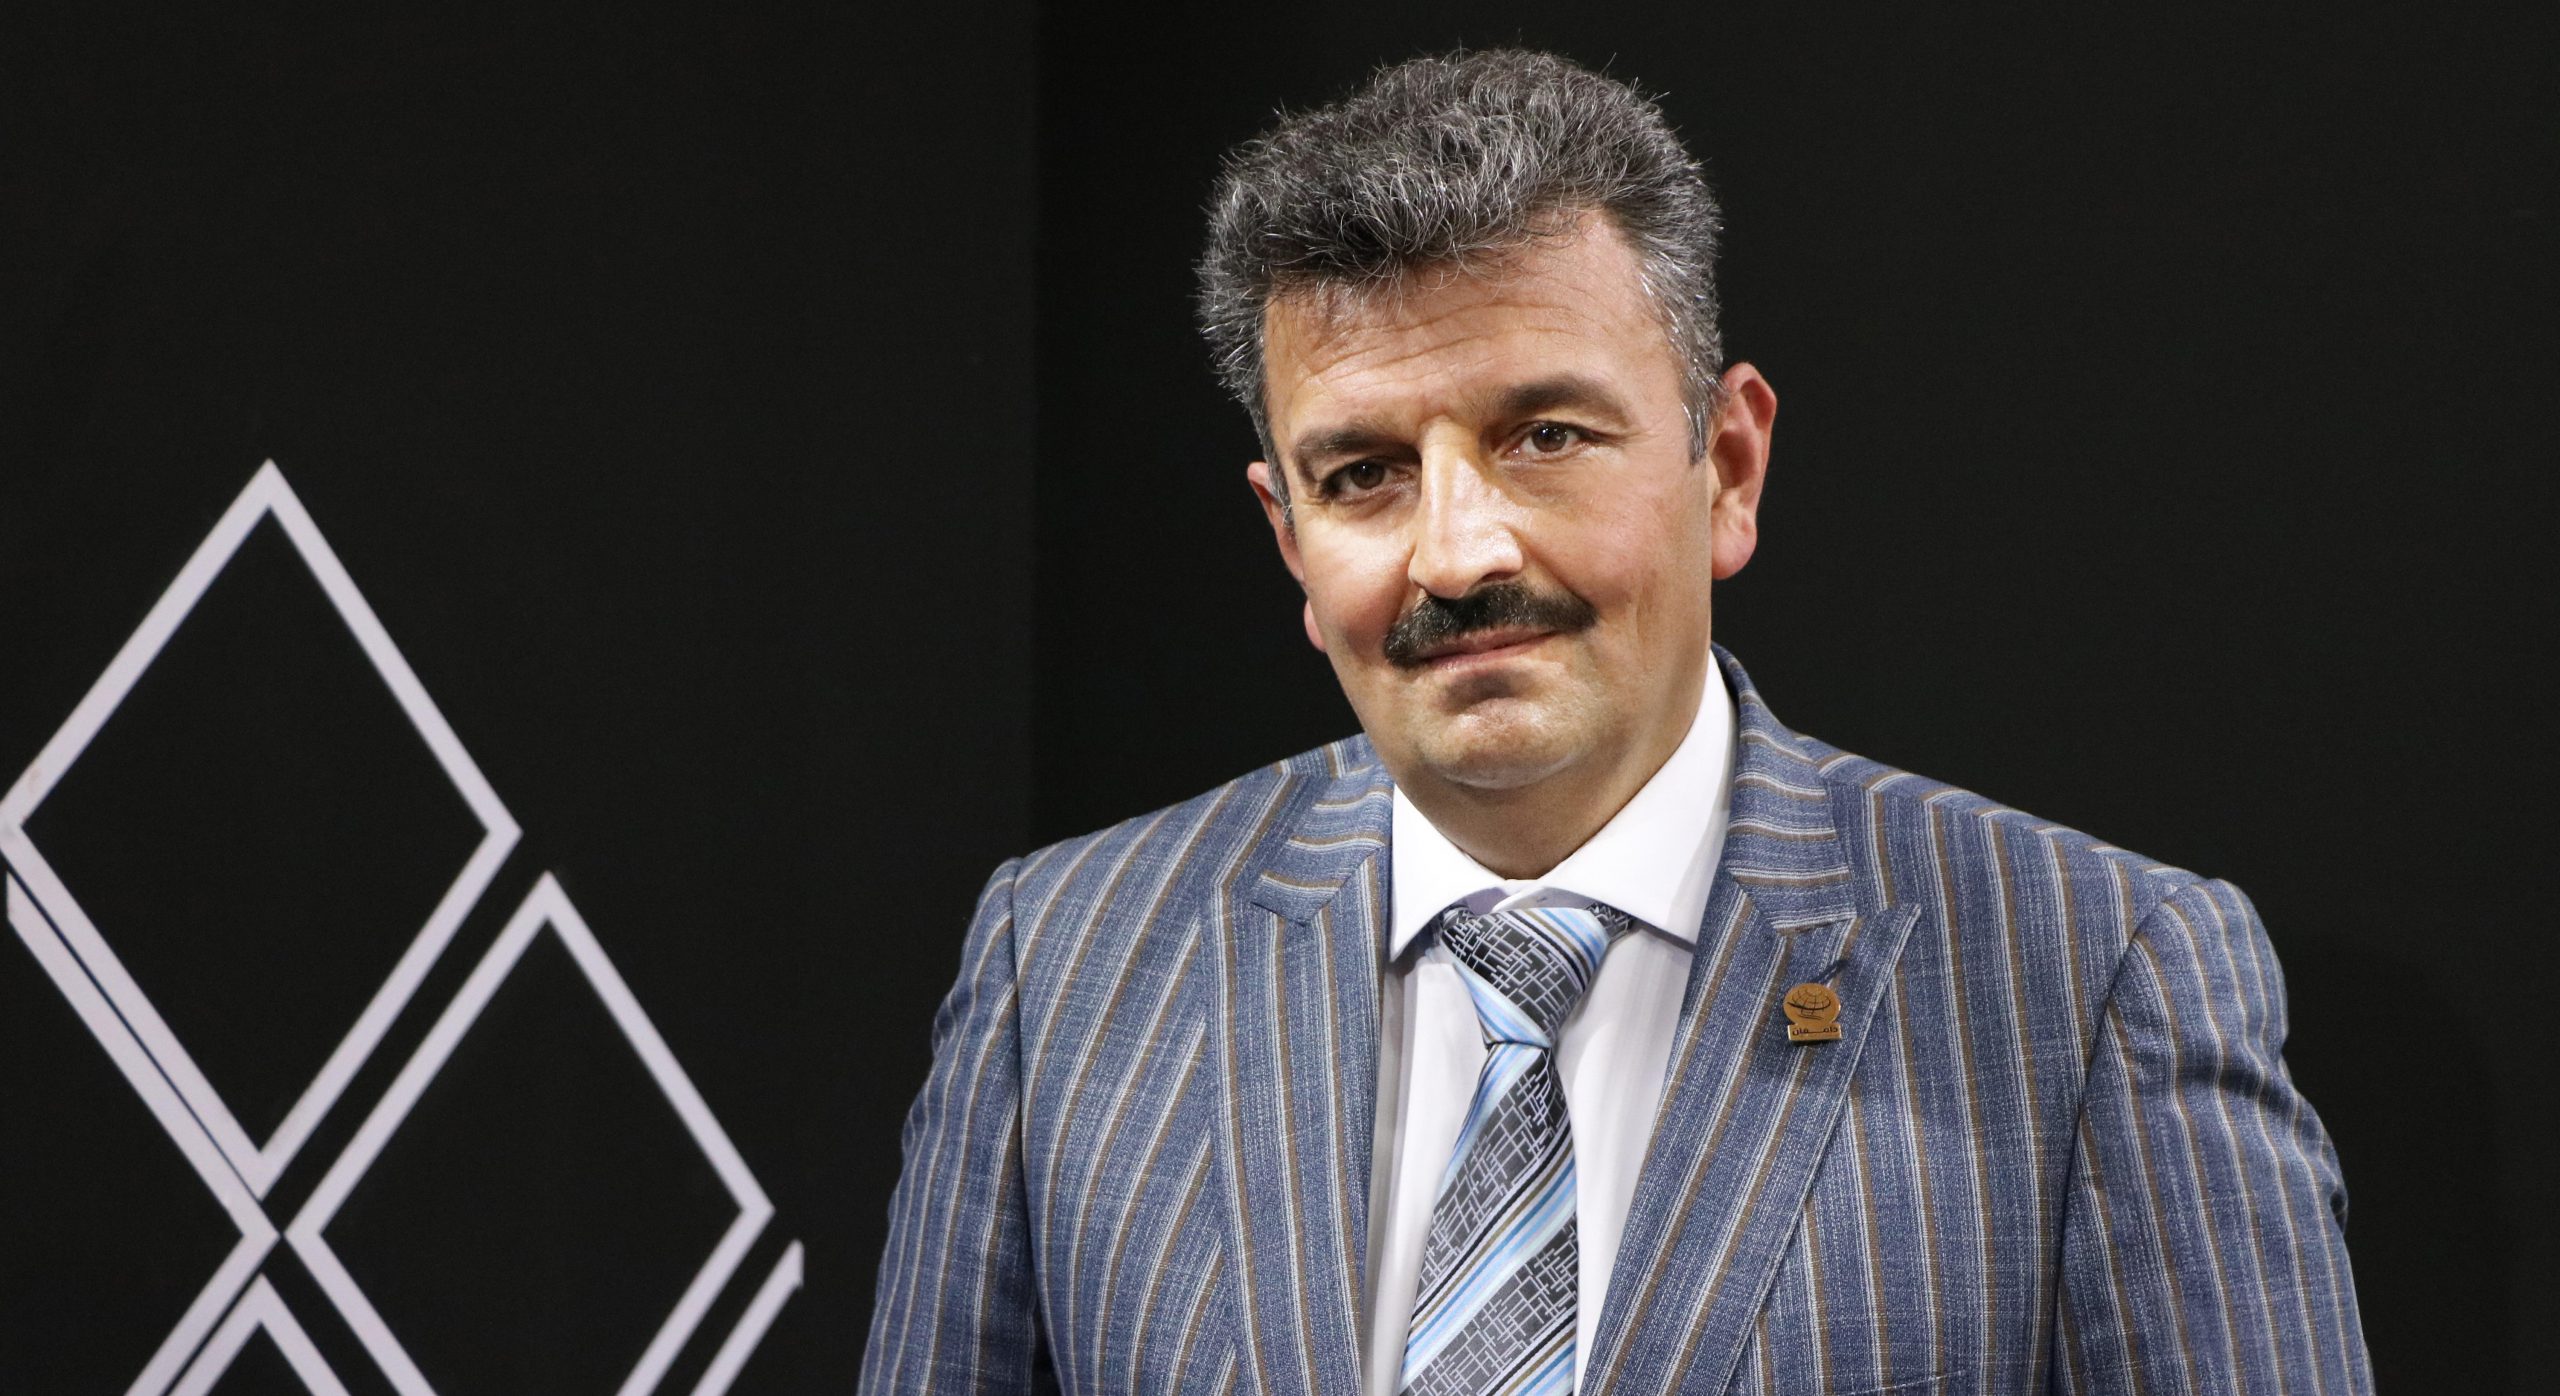 محمدرضا محمدی، مدیرعامل شرکت سیم و کابل دامغان (بهفر)